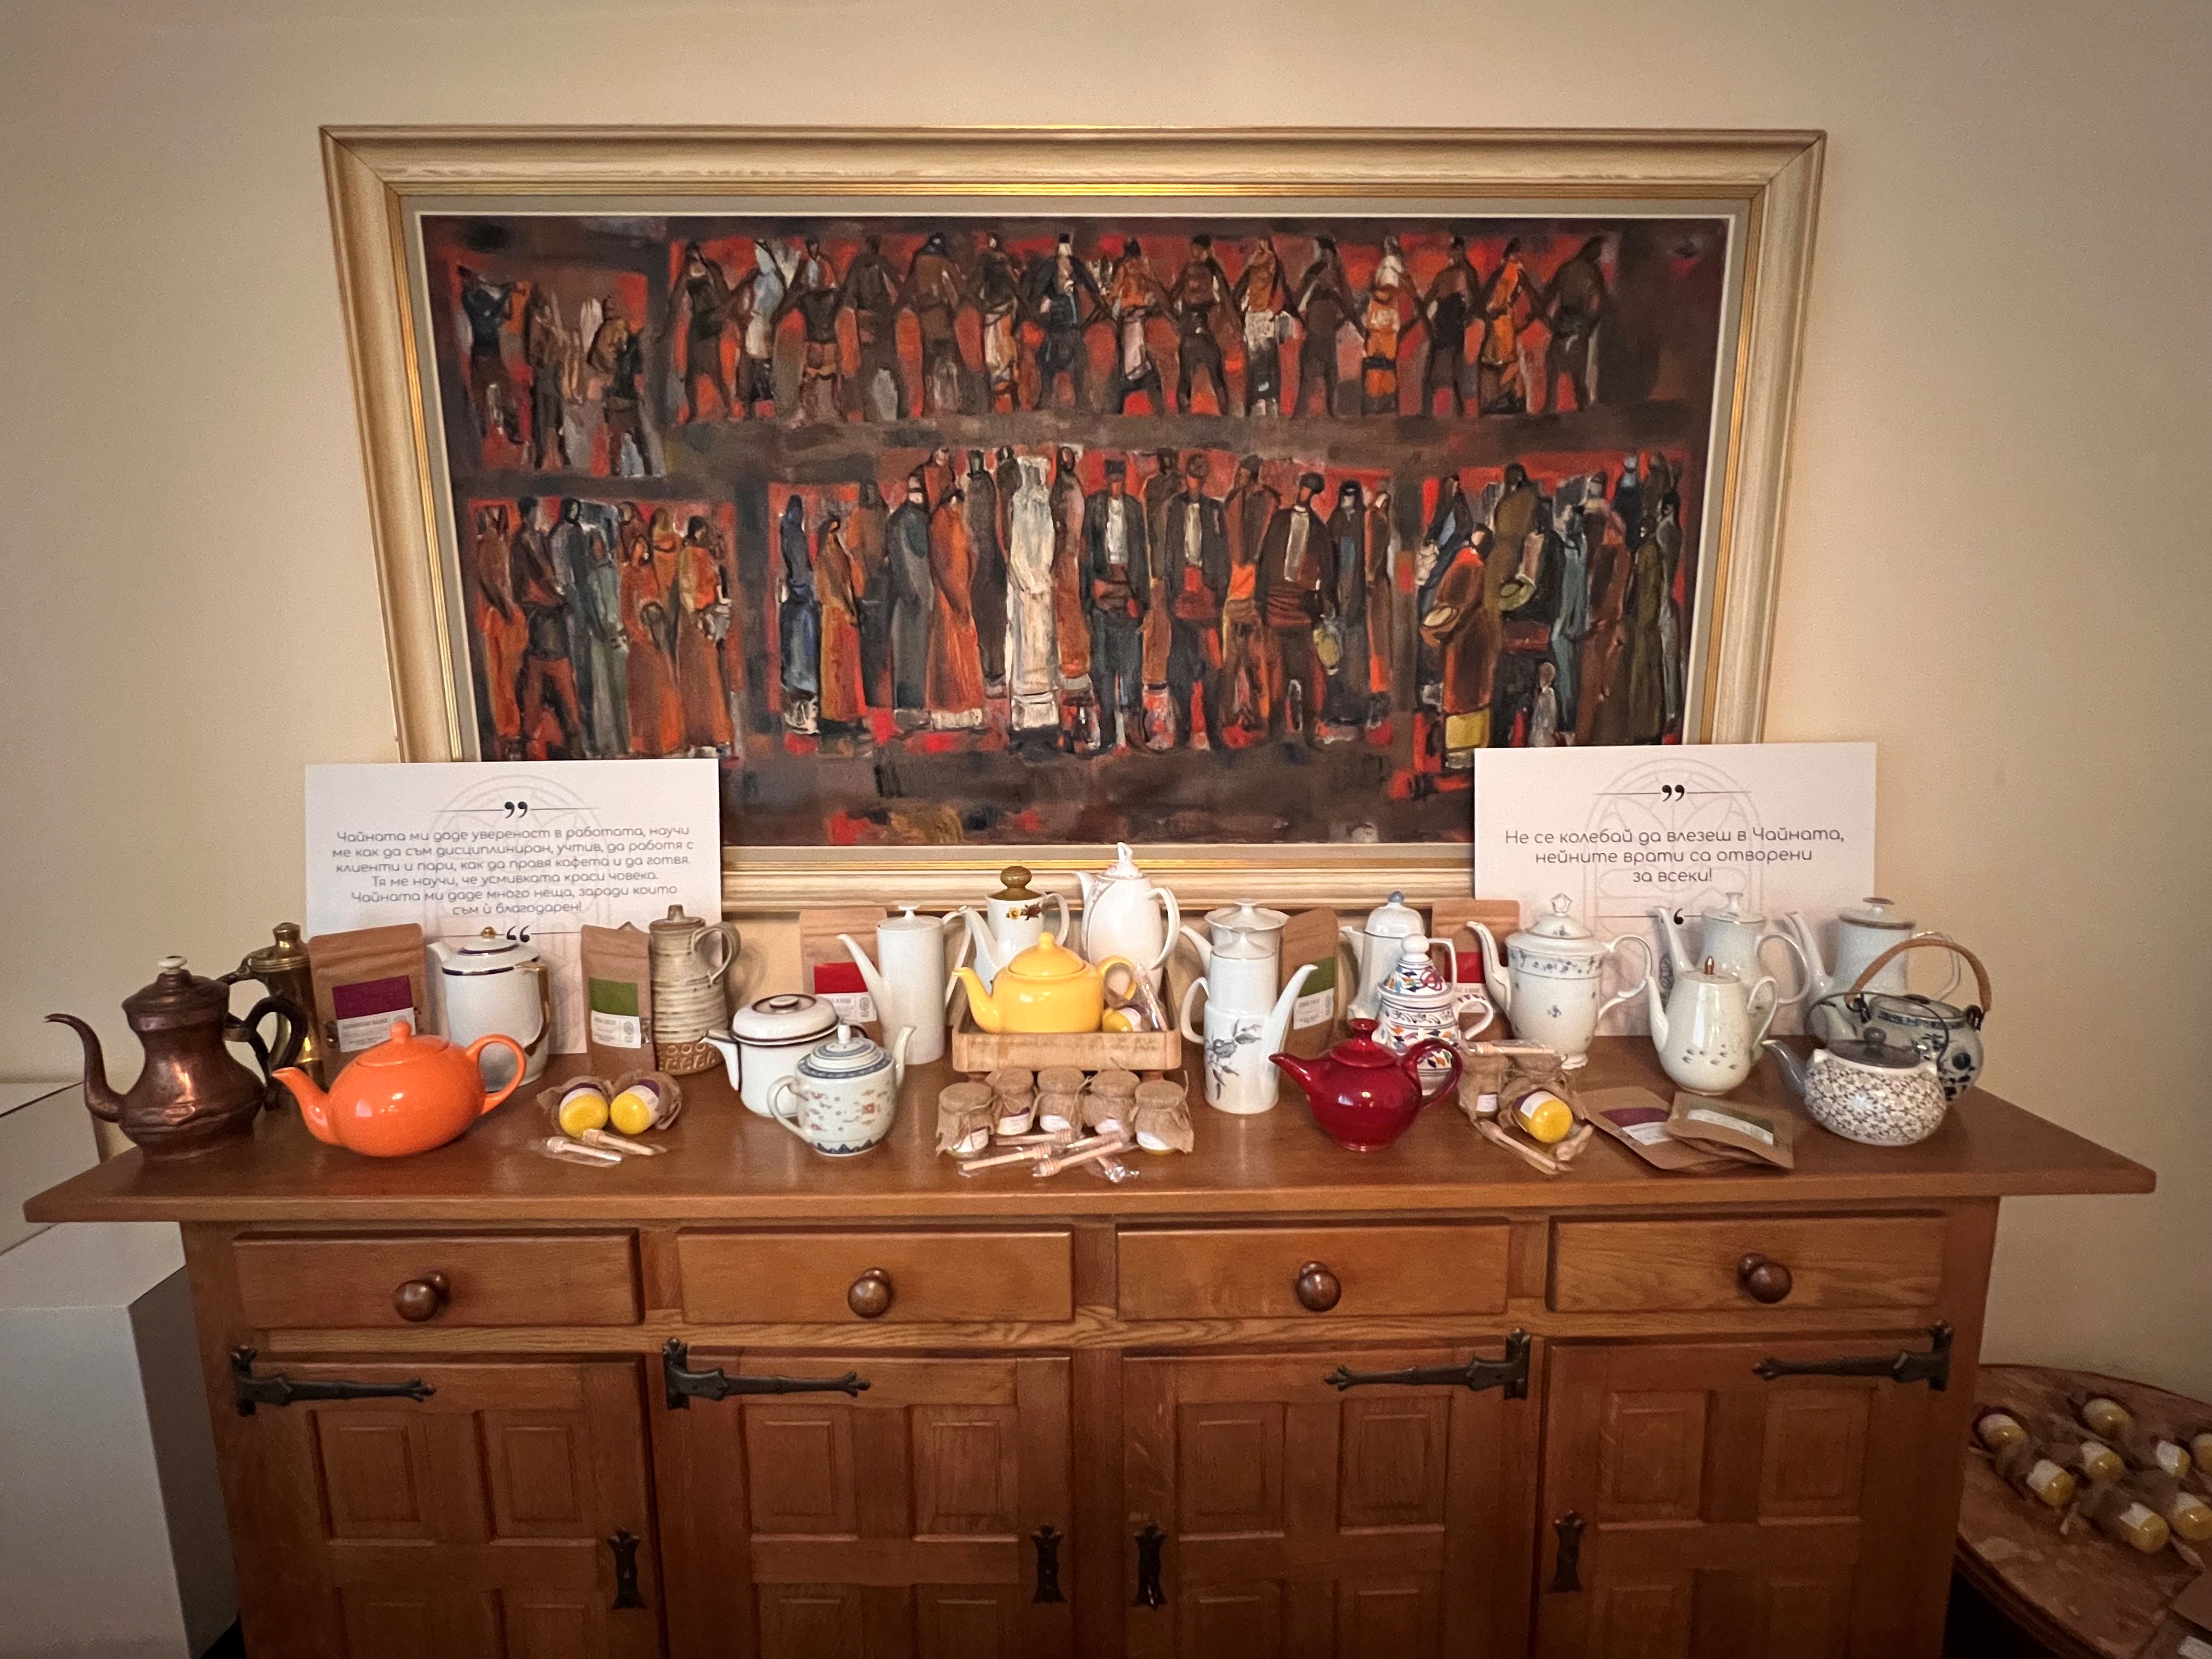 Българското посолство в Брюксел бе домакин на благотворително събитие „Чайници и истории“, отбелязващо 10-тата годишнина на фондация „Социалната чайна“